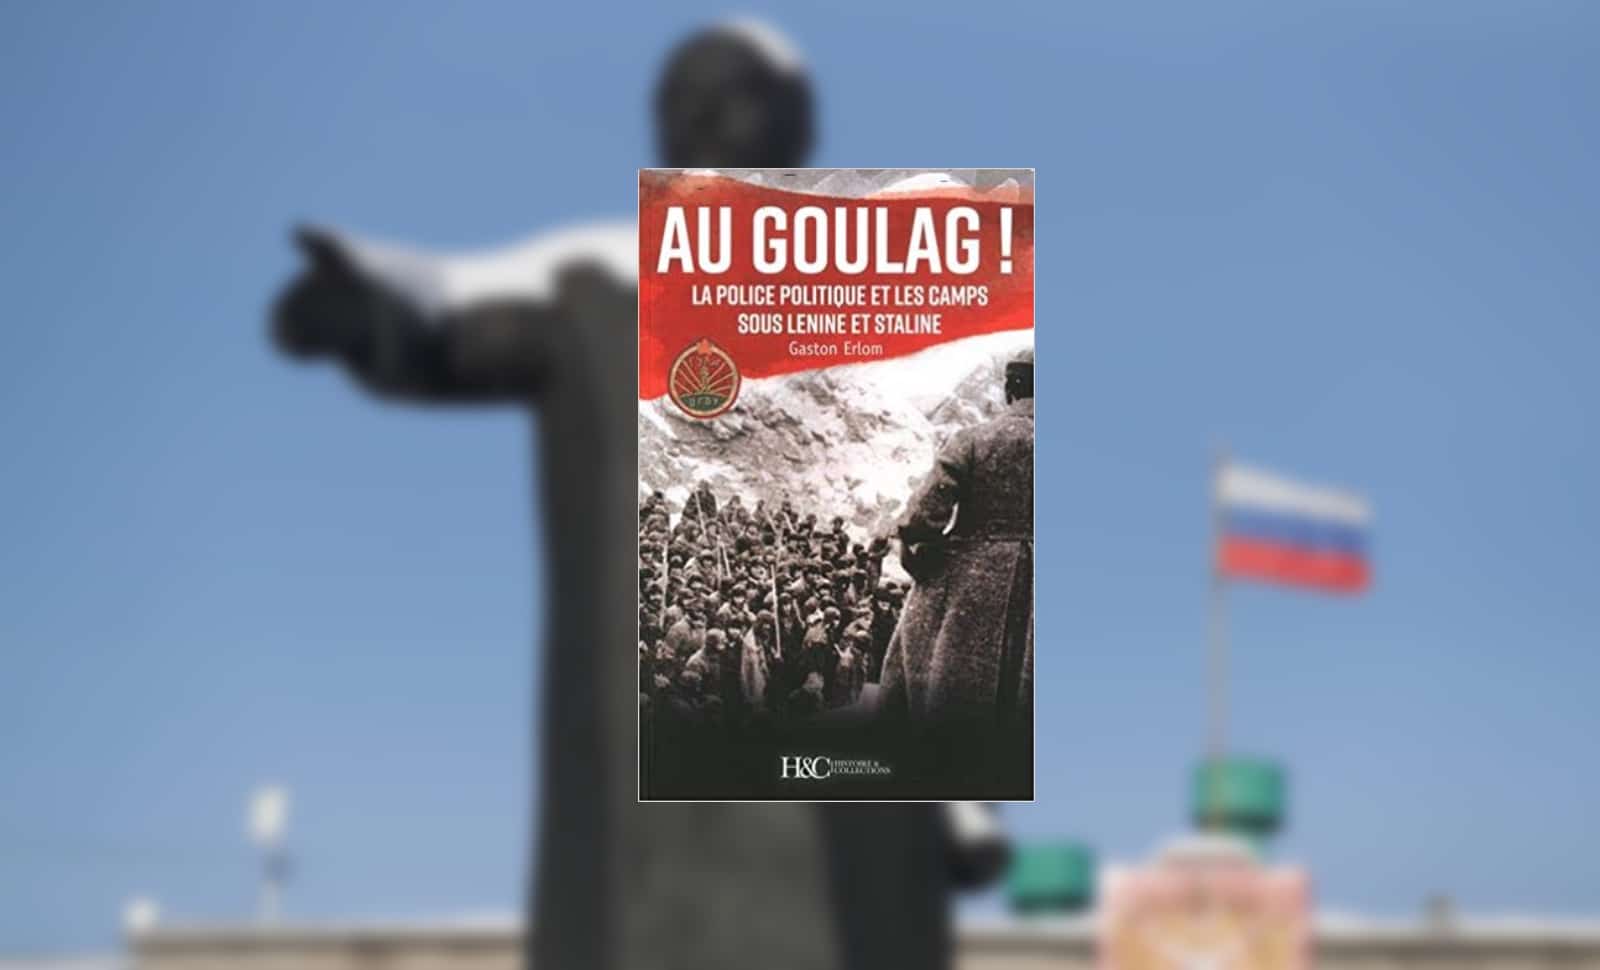 Au goulag! La police politique et les camps sous Lenine et Staline, Gaston Erlom, Histoire et Collection, 2018, 358 pages